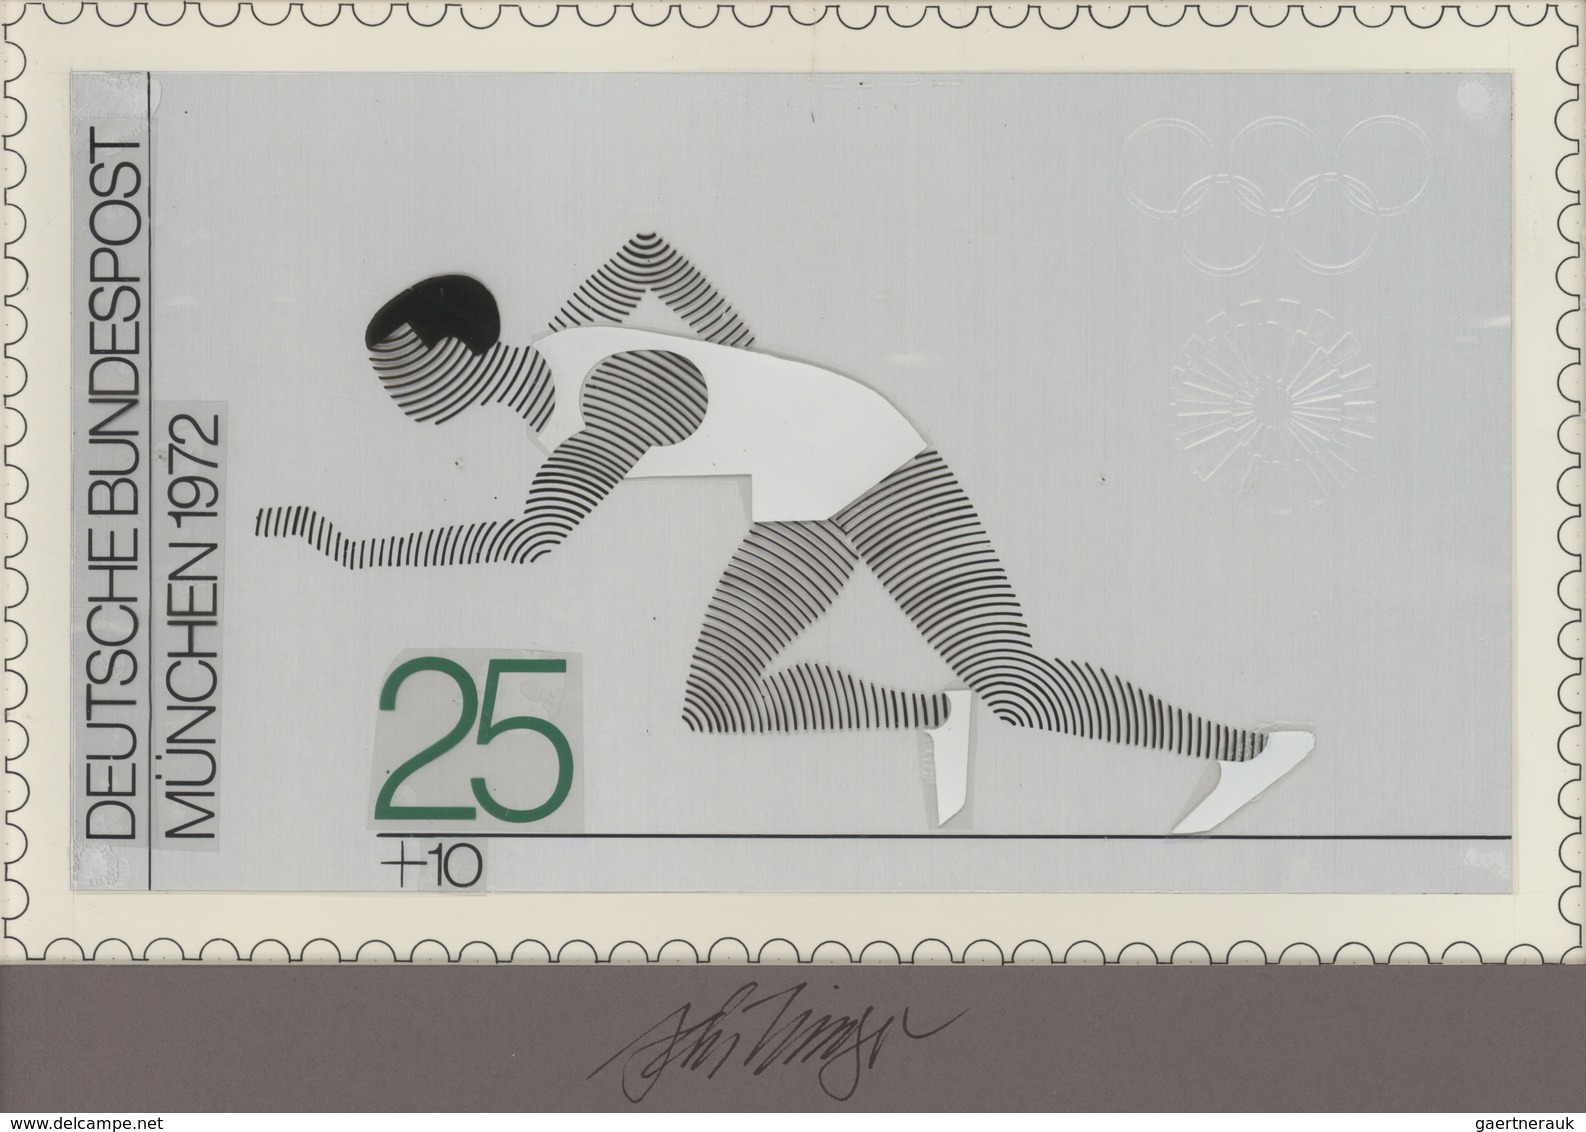 Thematik: Sport-Leichtathletik / Sports-athletics: 1972, Bund, Nicht Angenommener Künstlerentwurf (2 - Leichtathletik